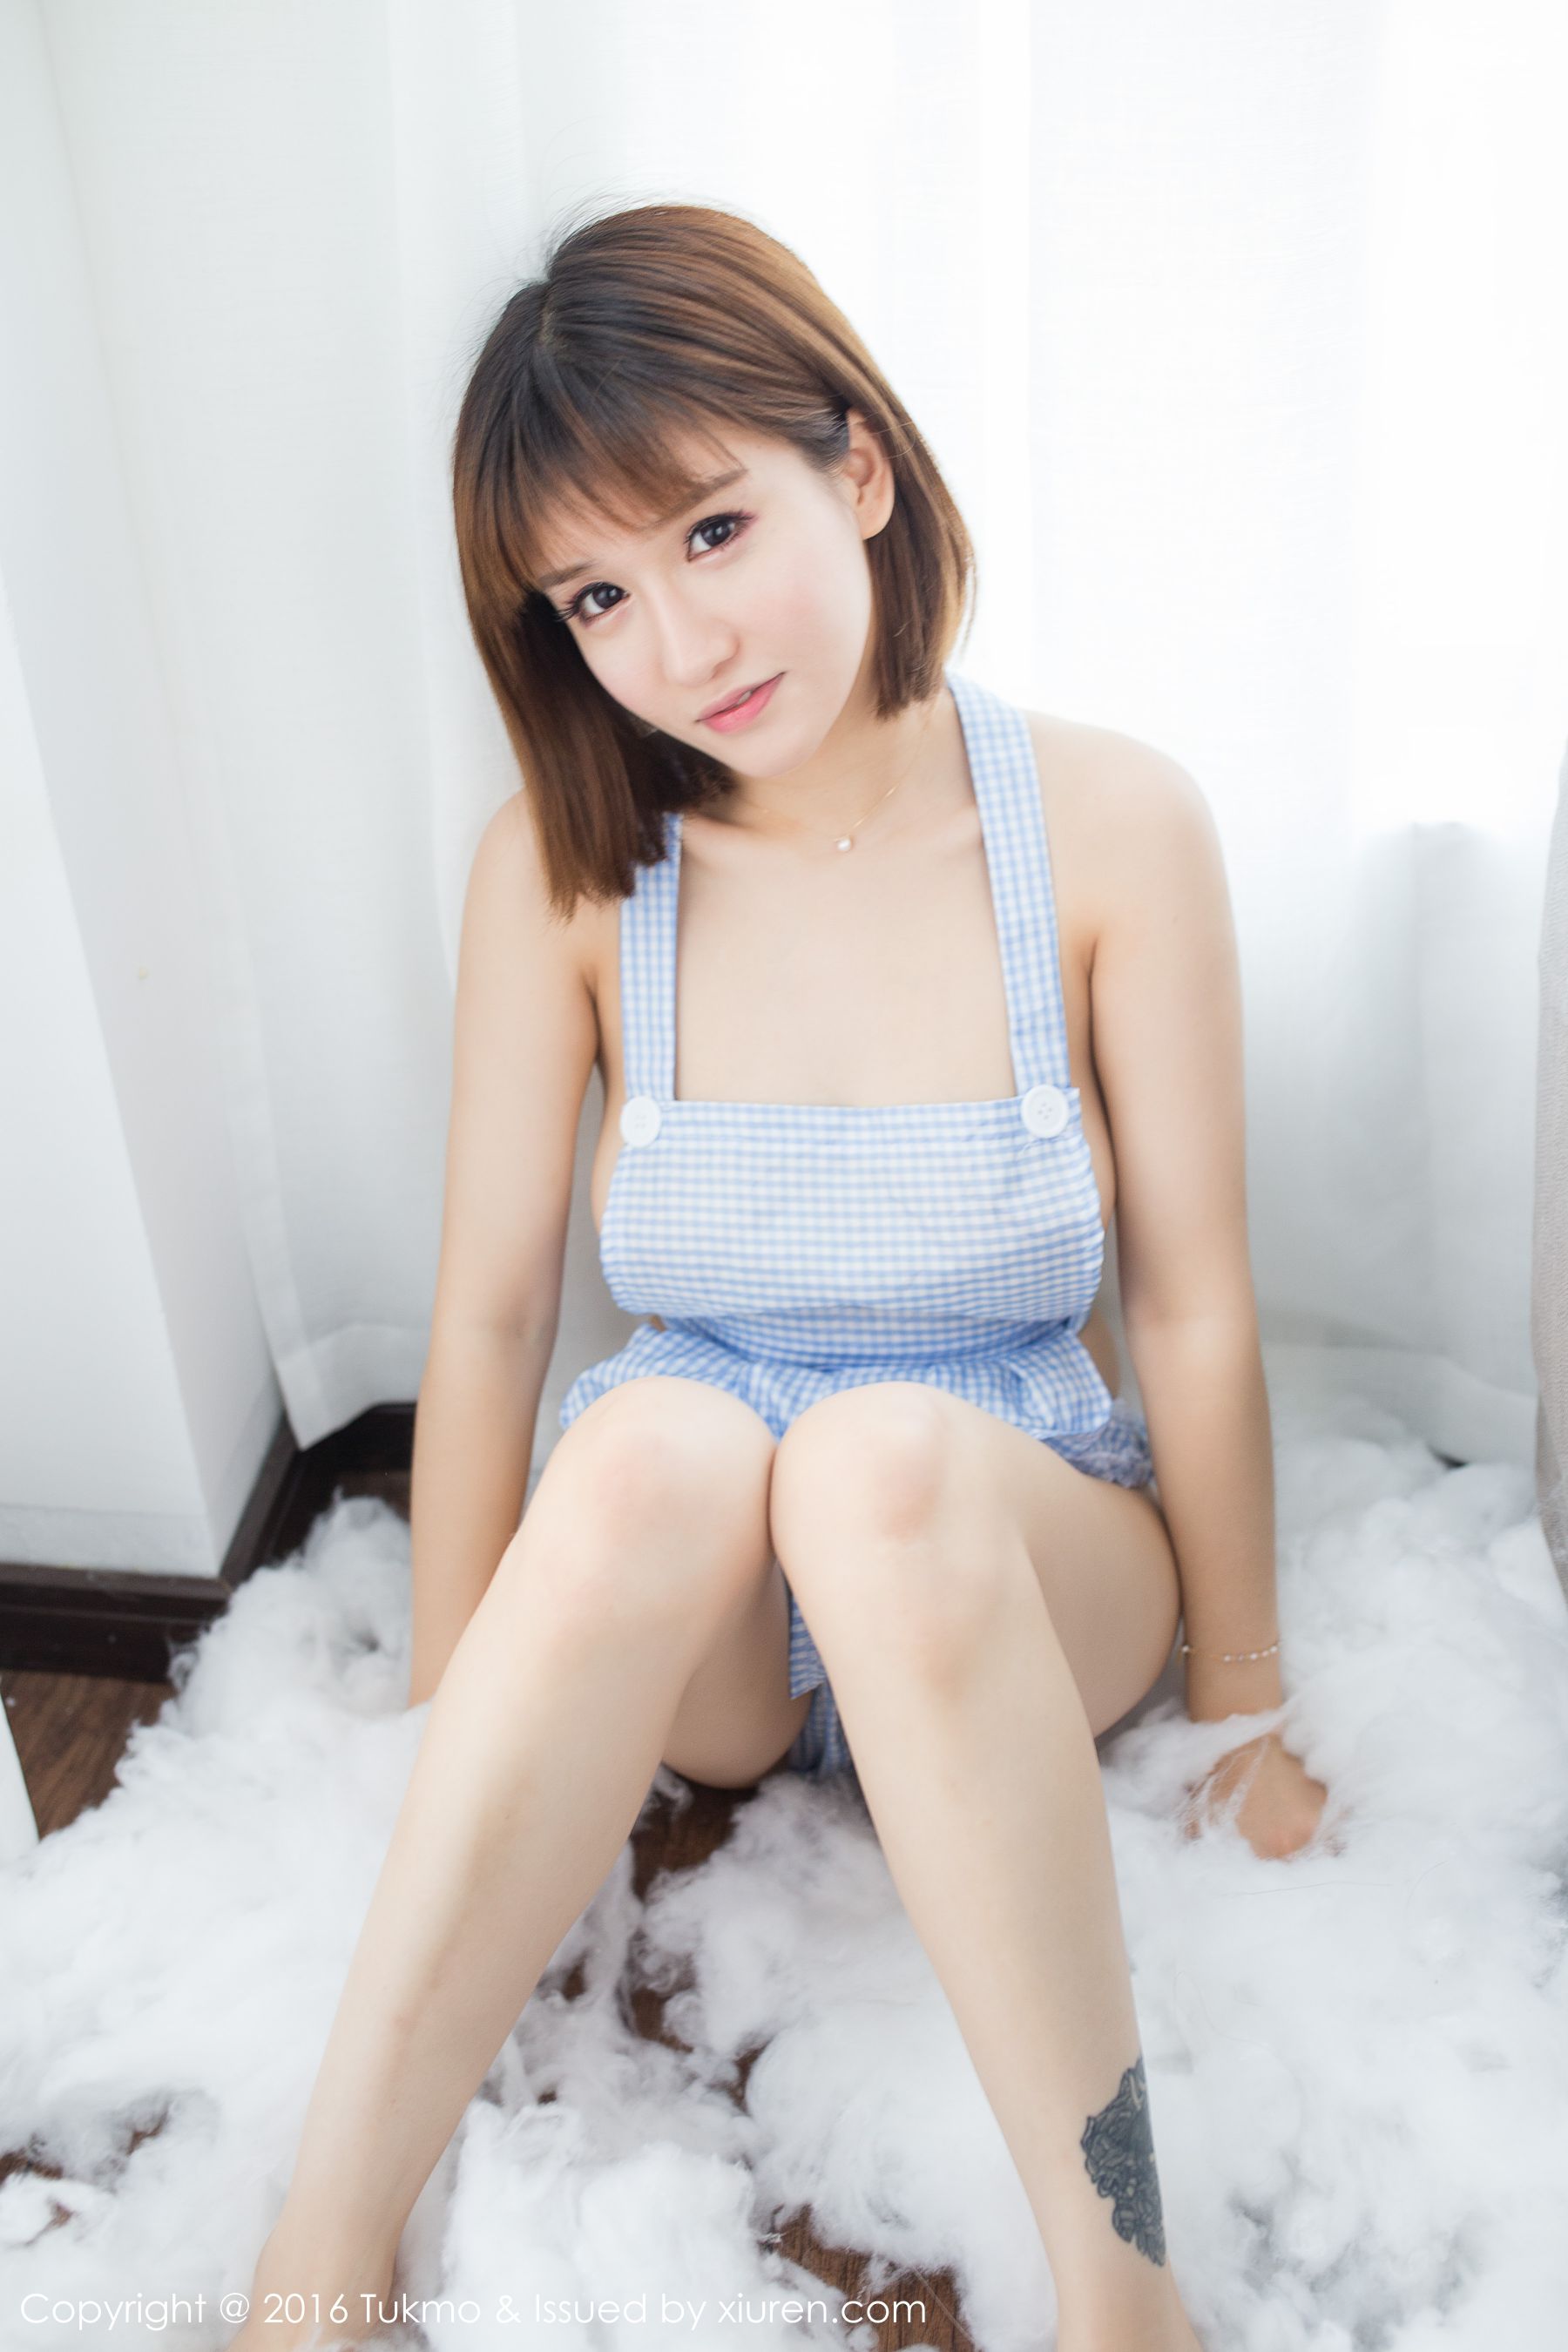 Soft and cute girl @K8 Aojiao Mengmeng Vivian (Tukmo) Vol.092 Photo Album